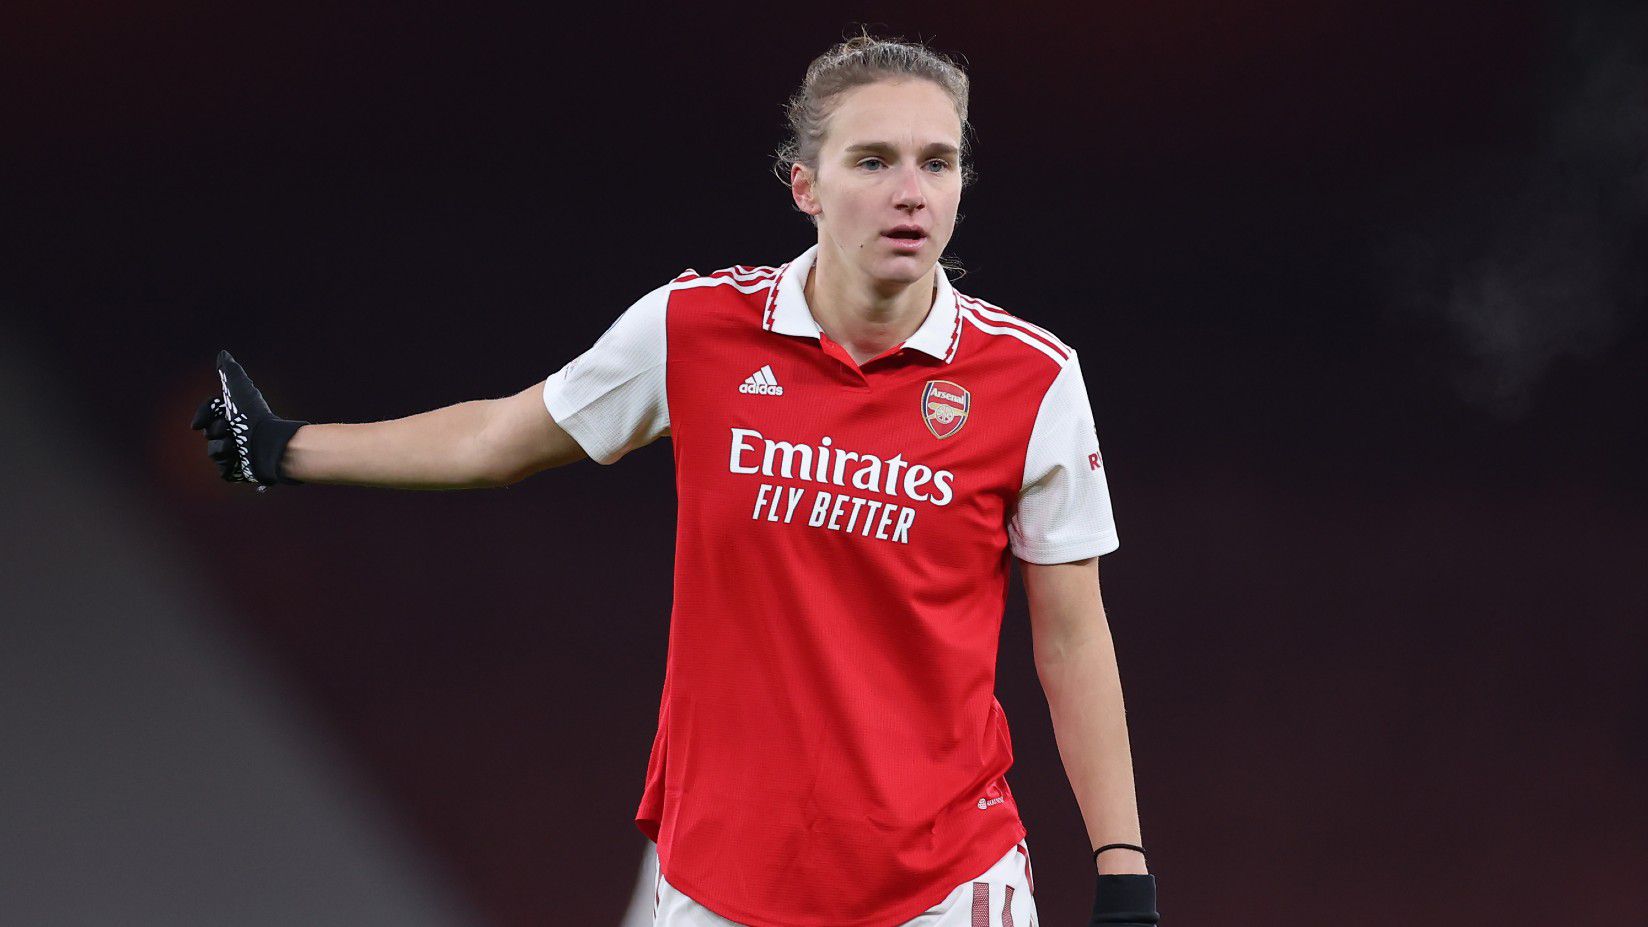 Súlyos térdsérülése miatt lemaradhat a női vb-ről az Arsenal egyik legjobbja